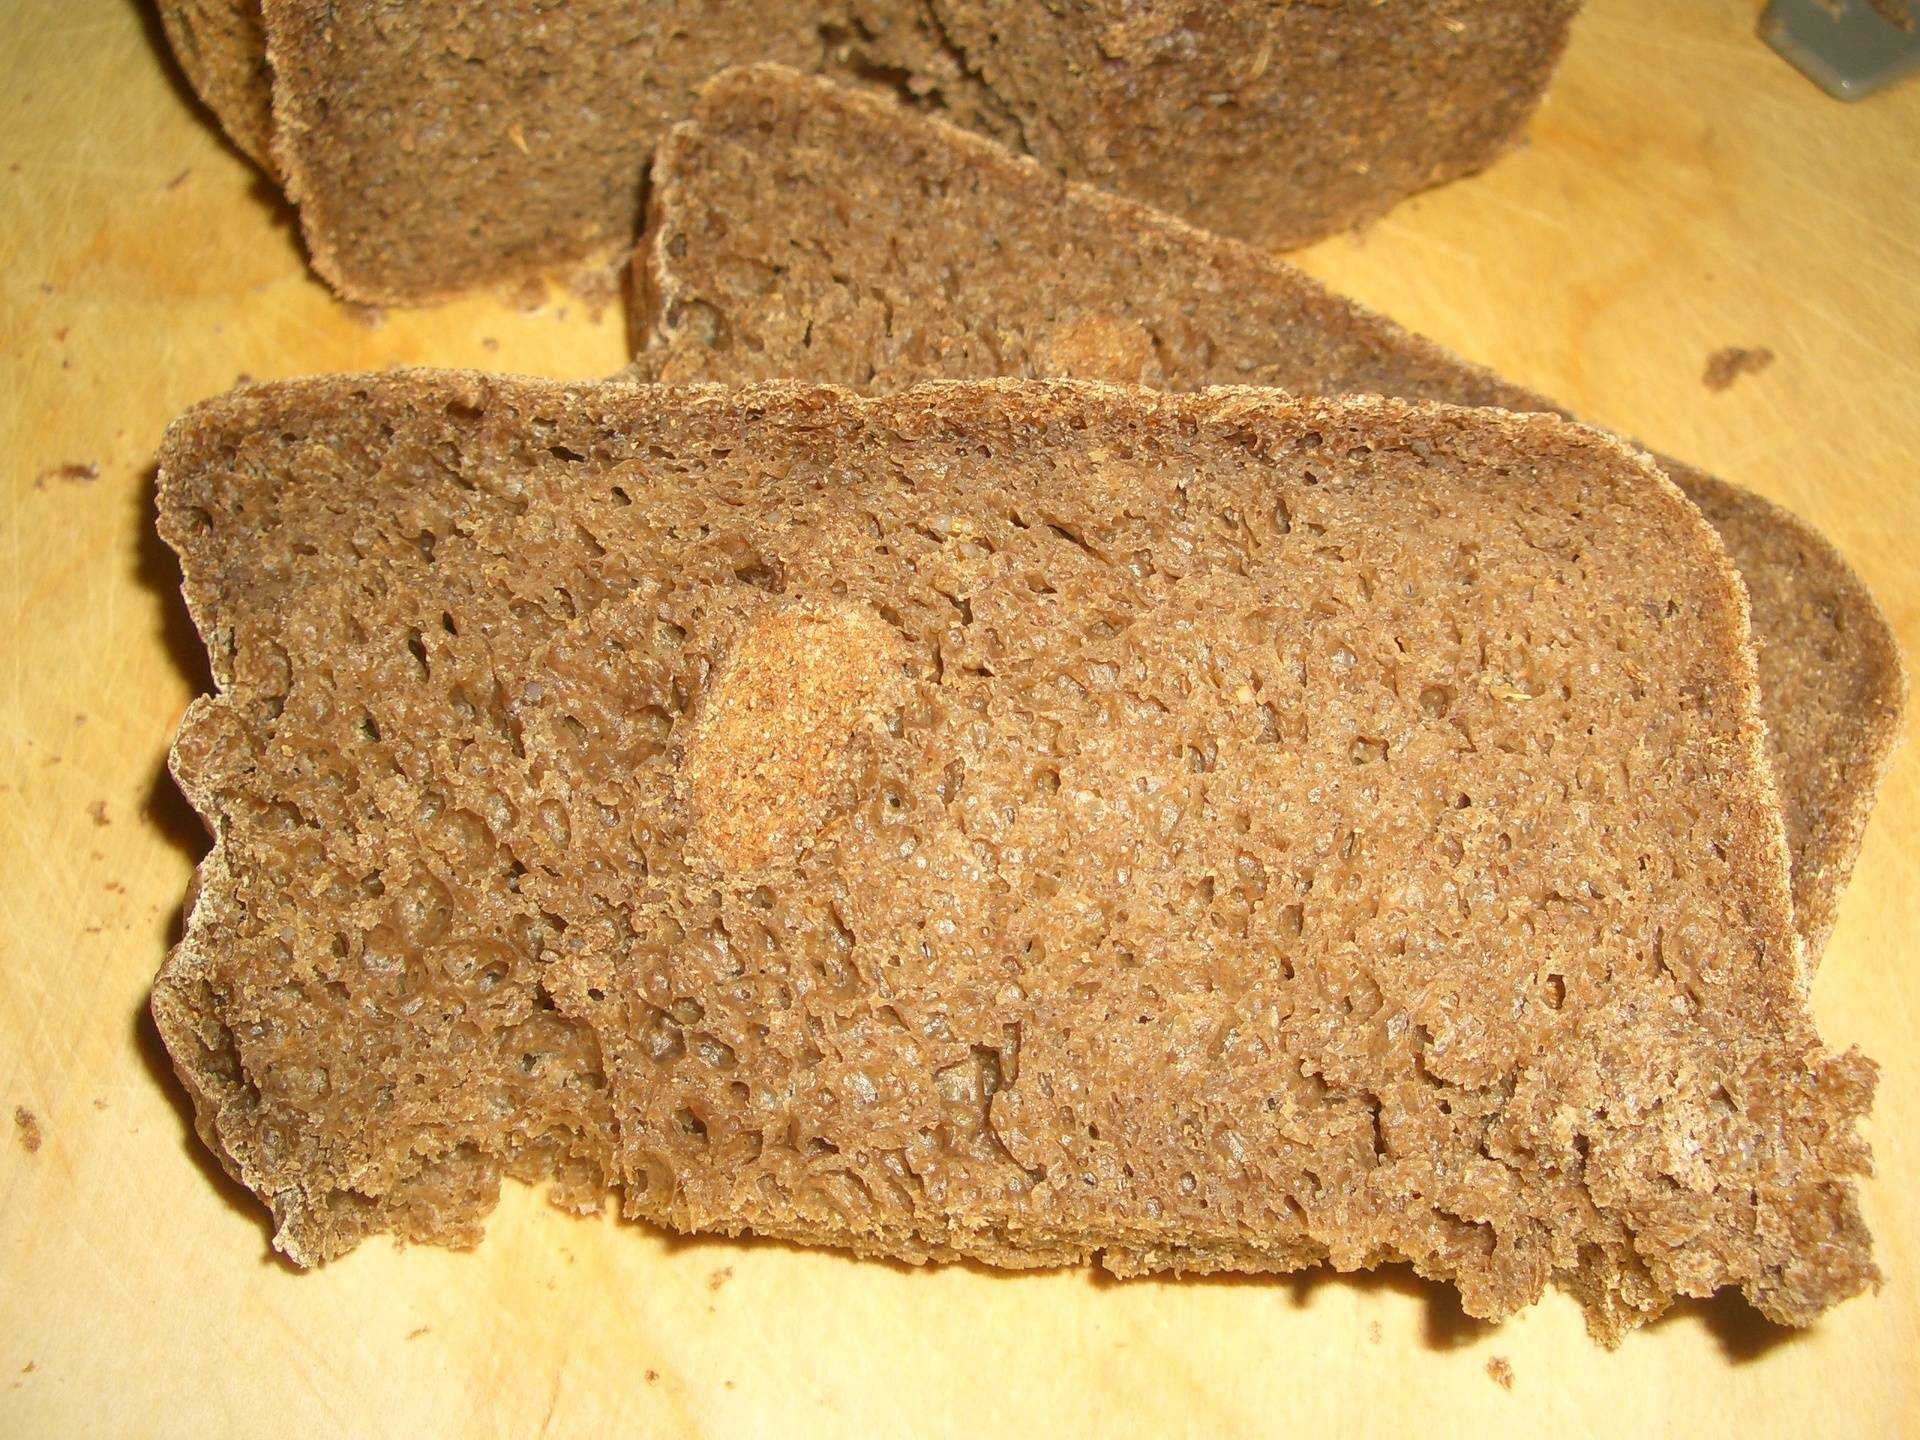 Топ-8 рецептов домашнего хлеба без дрожжей